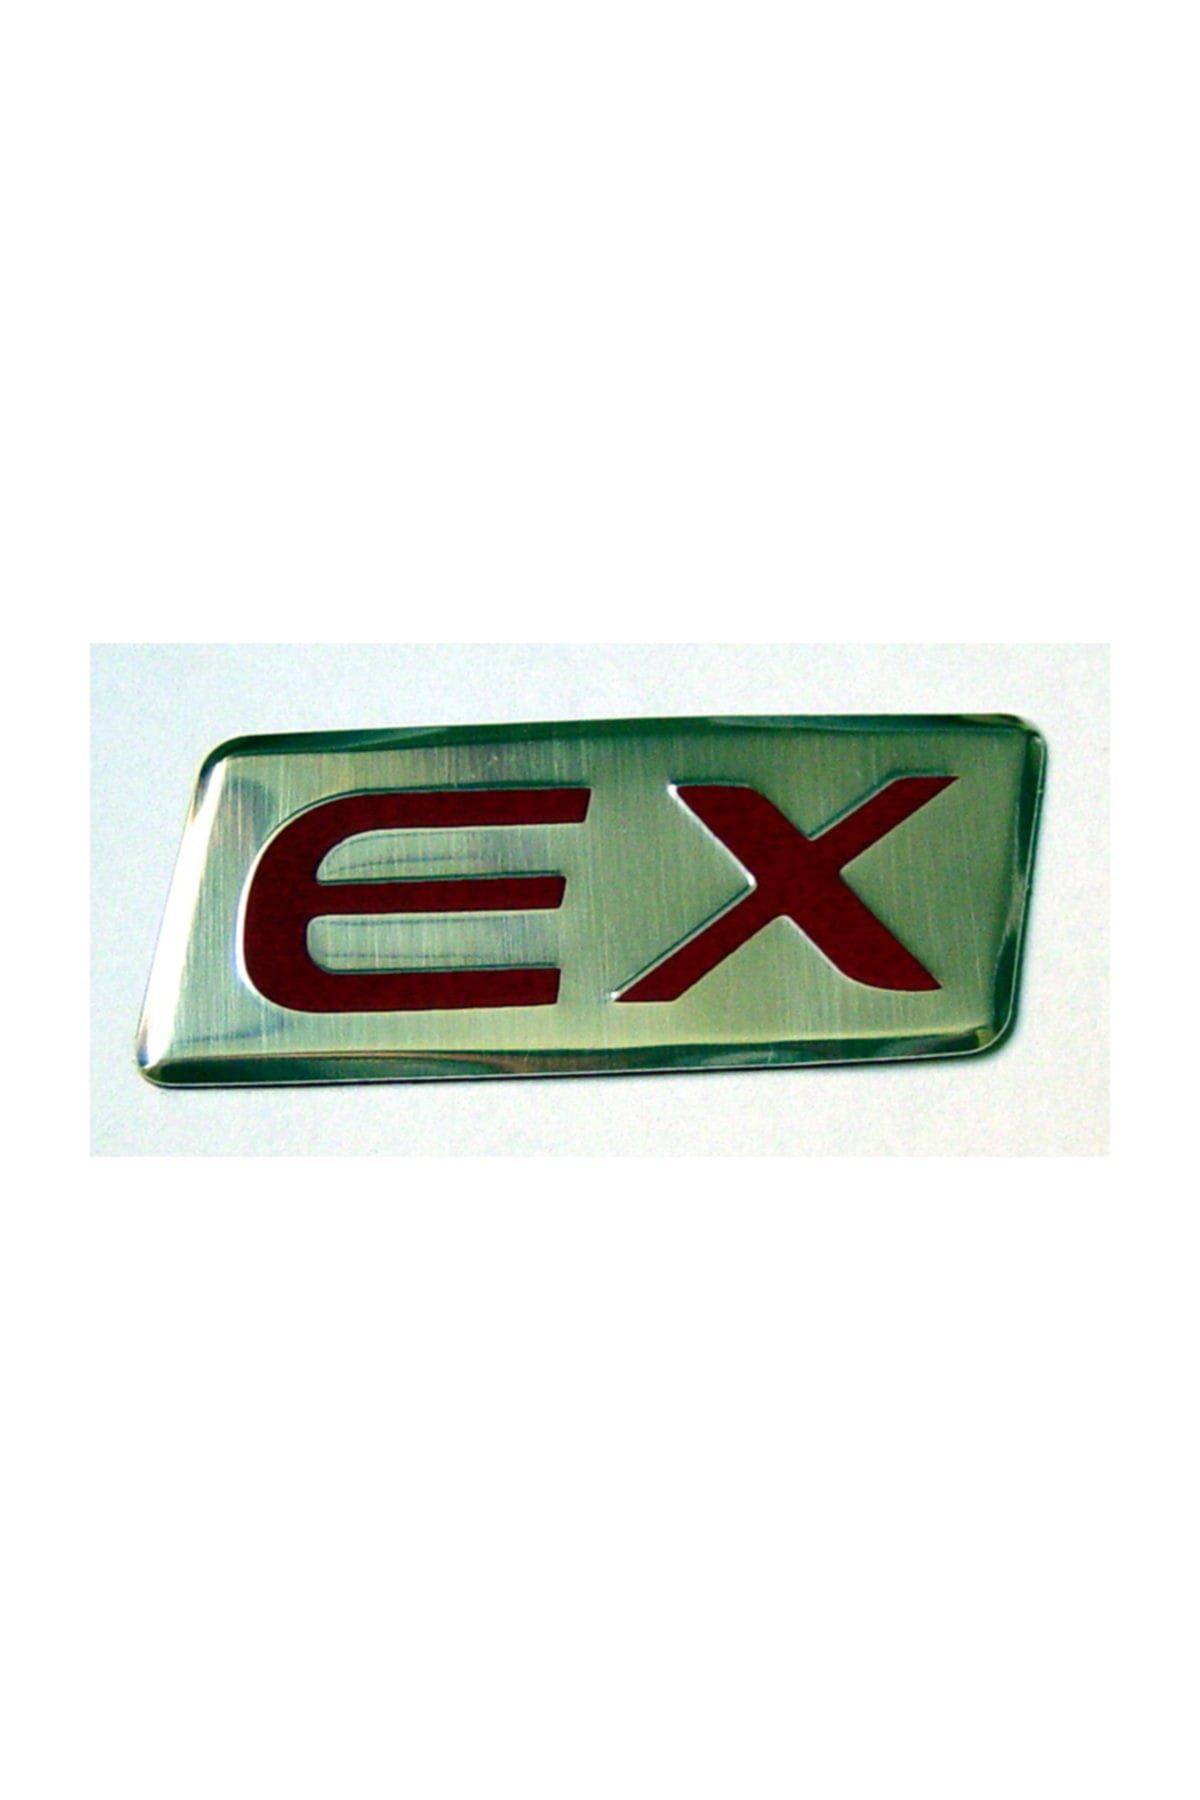 Dreamcar Metal Amblem ''EX'' 8000105